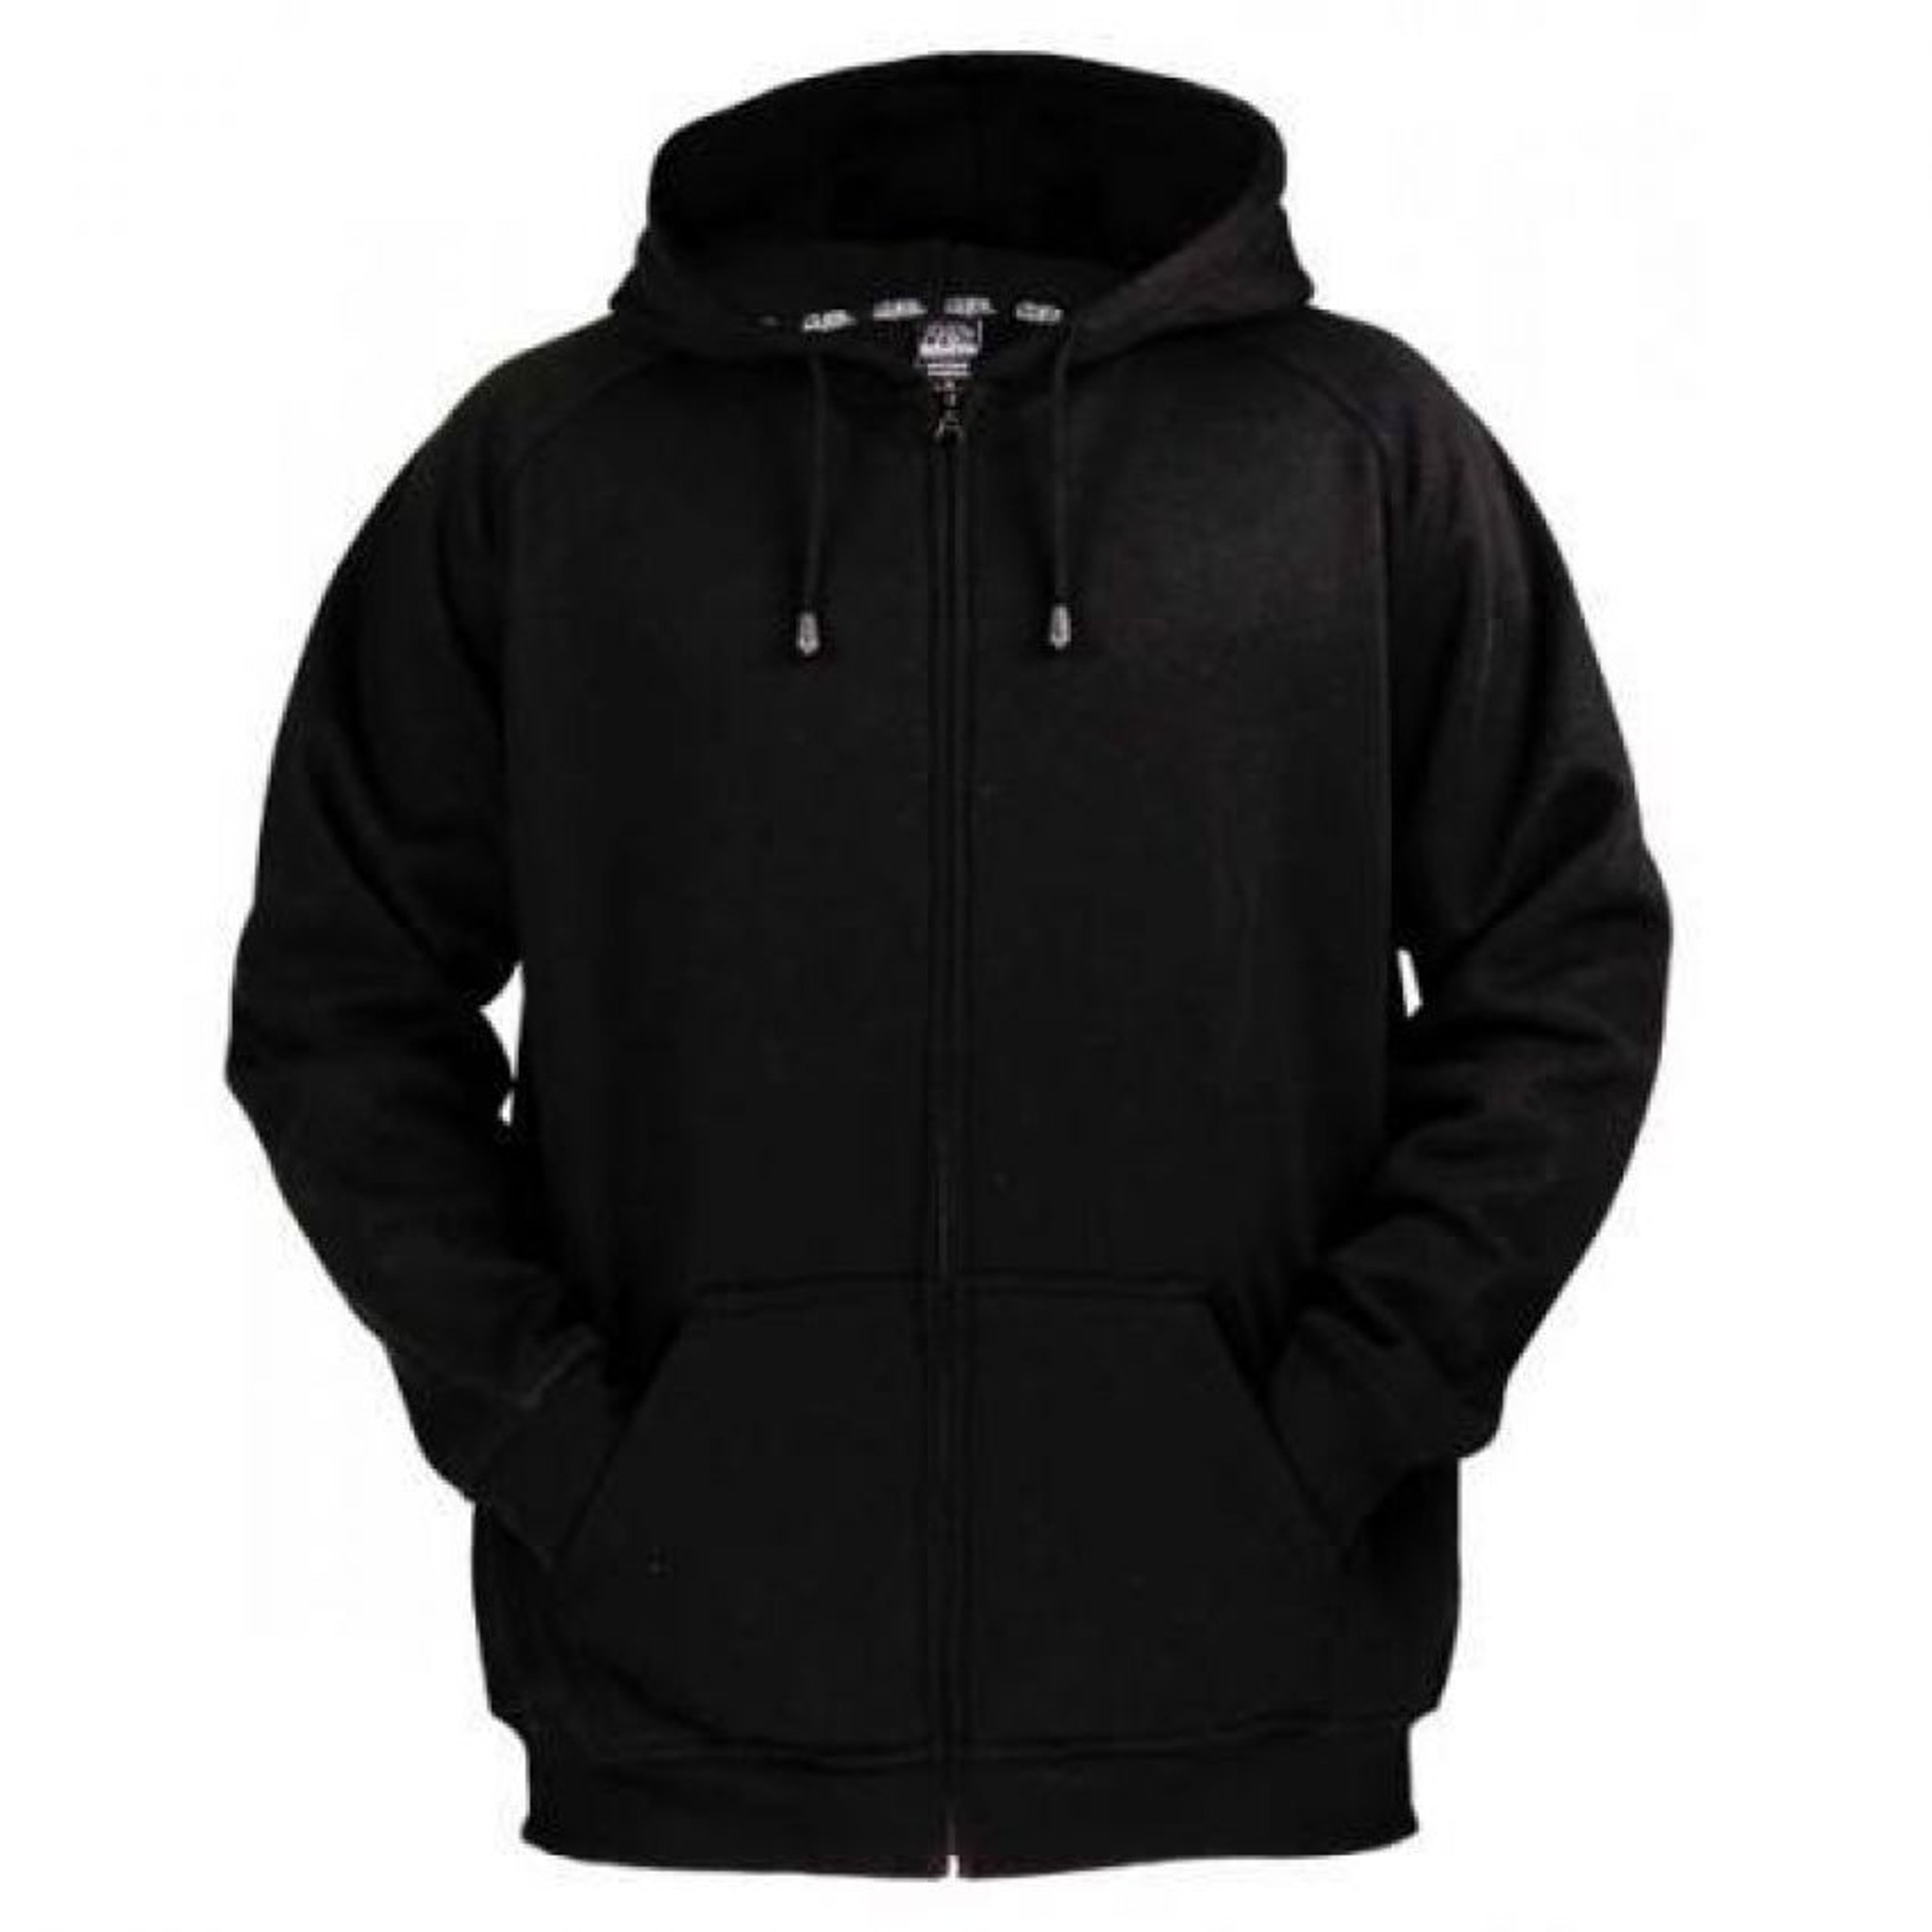 black zip sweatshirt